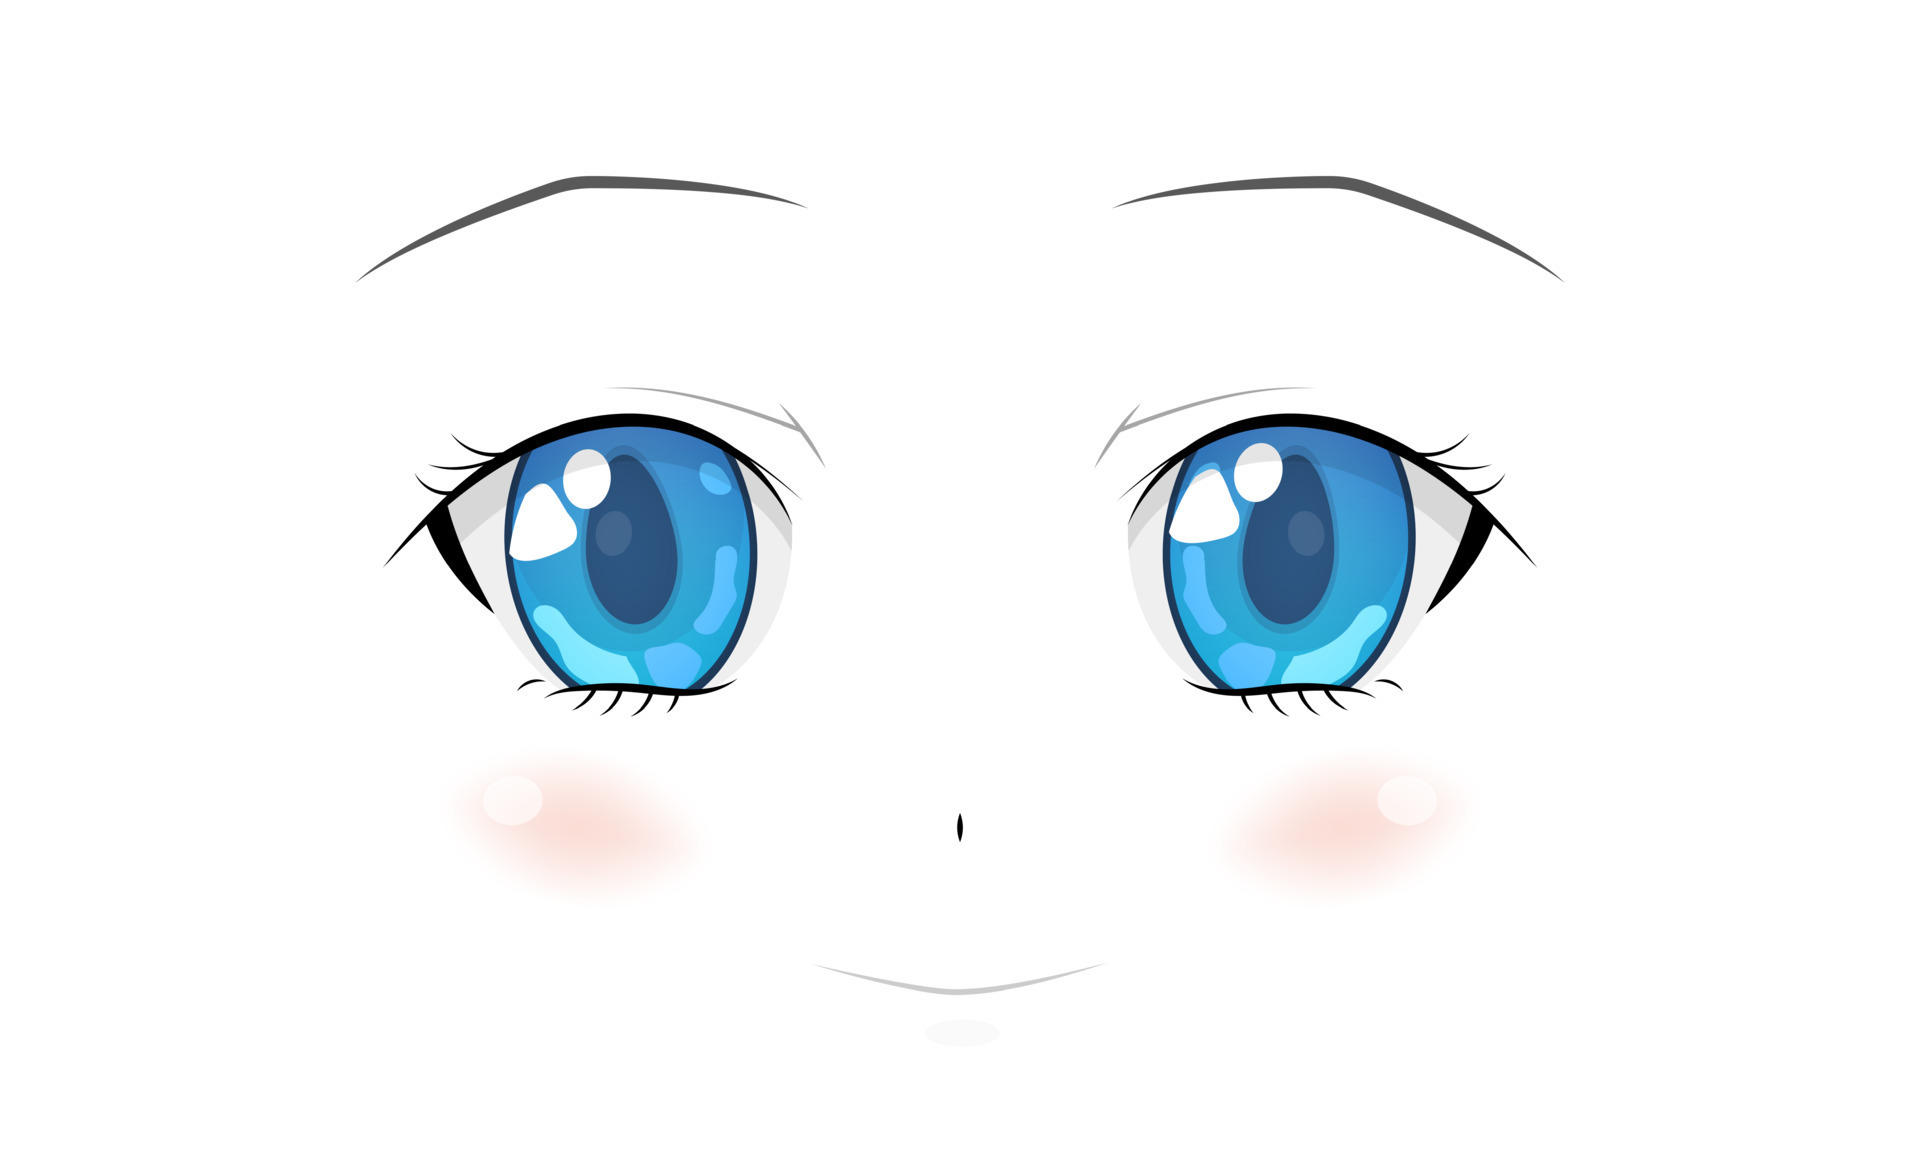 cara de anime feliz. grandes olhos azuis estilo mangá, nariz